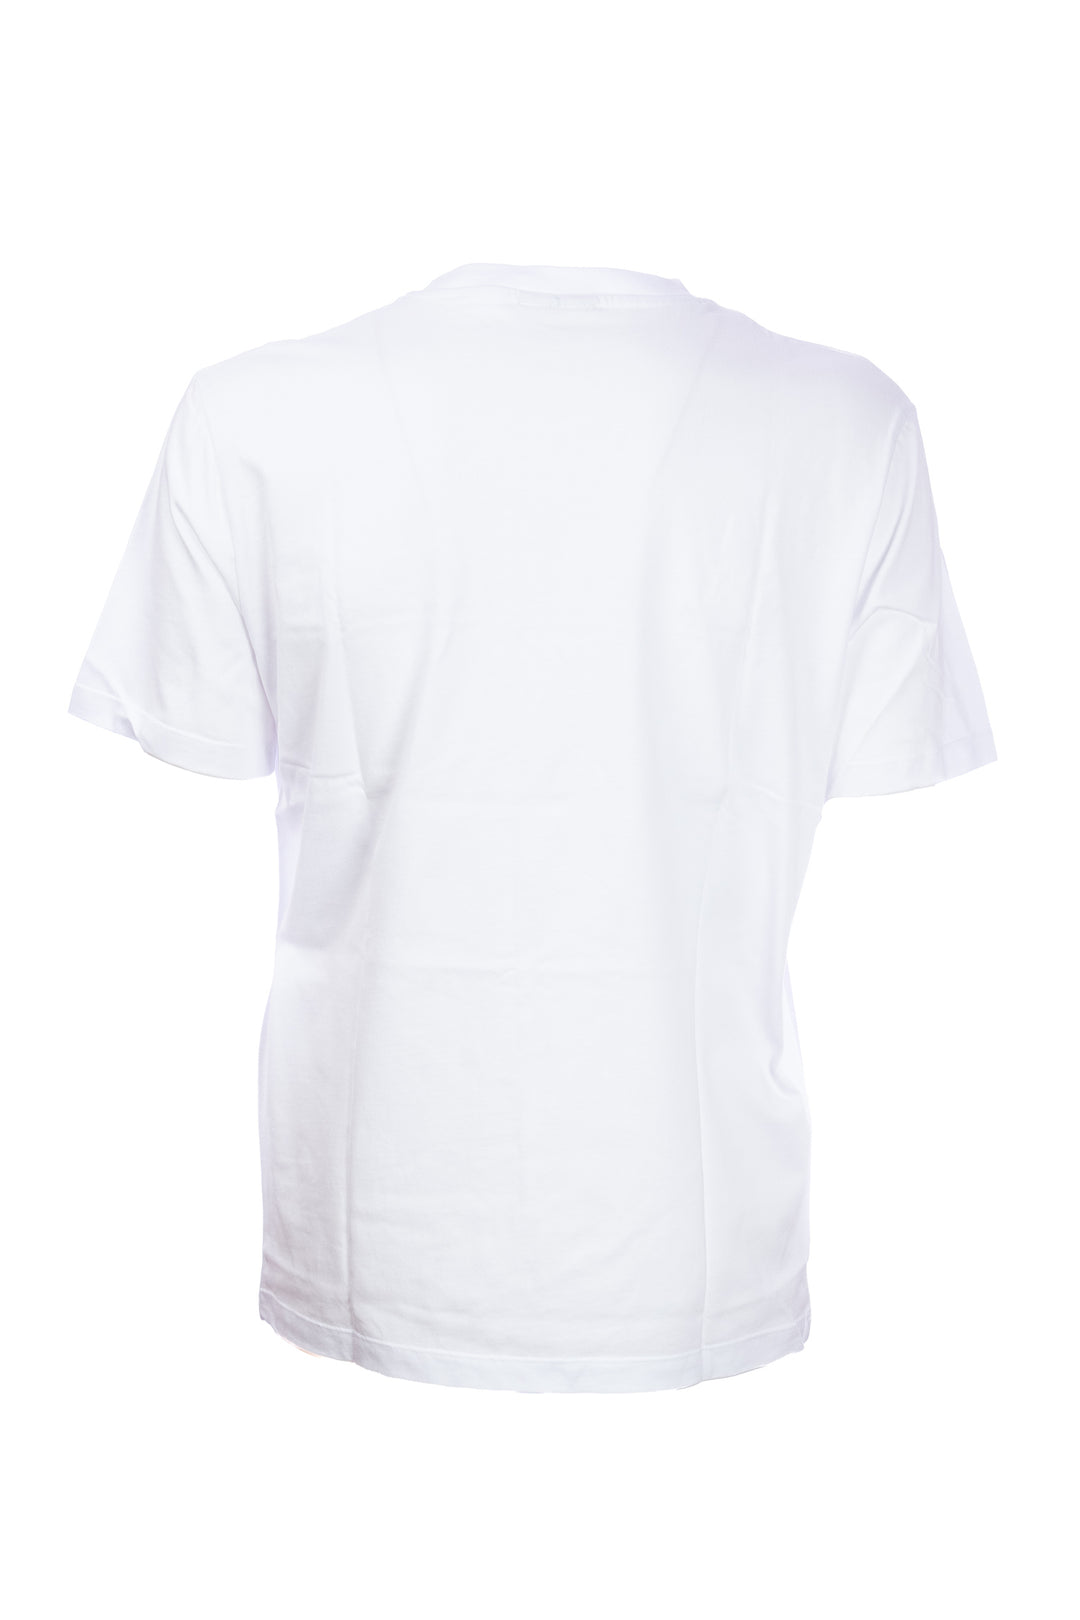 GAELLE T-shirt bianca in cotone con logo grande ricamato in contrasto - Mancinelli 1954